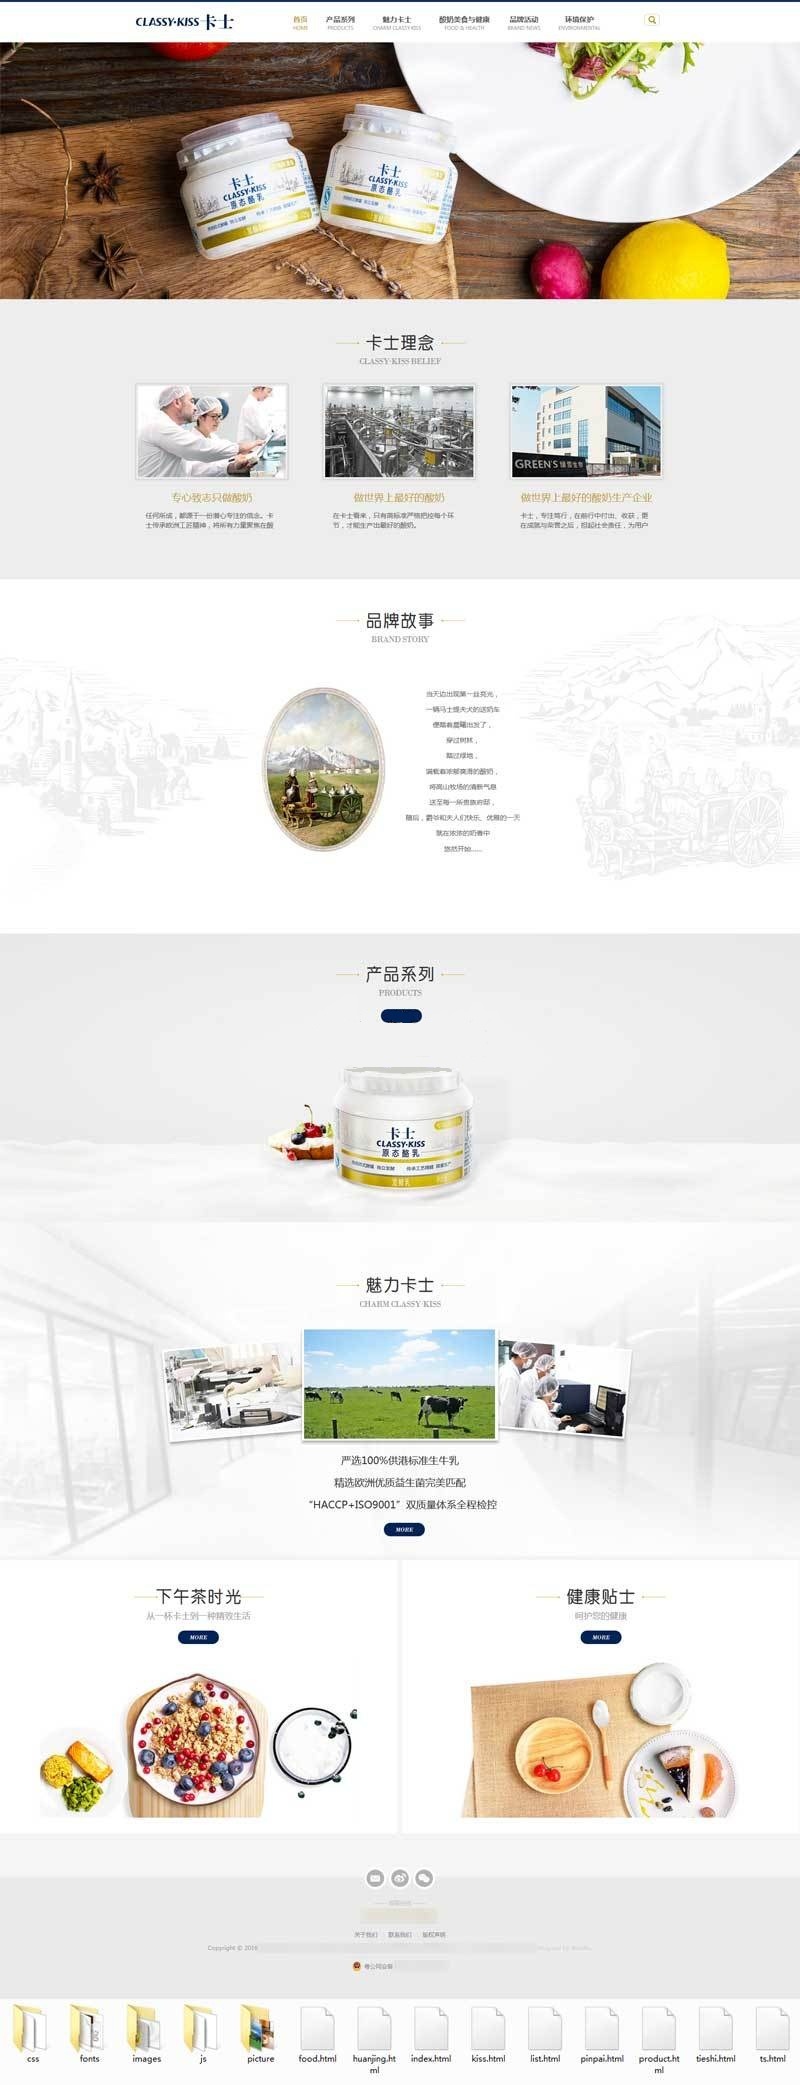 html酸奶制品企业官方网站网页模板 响应式